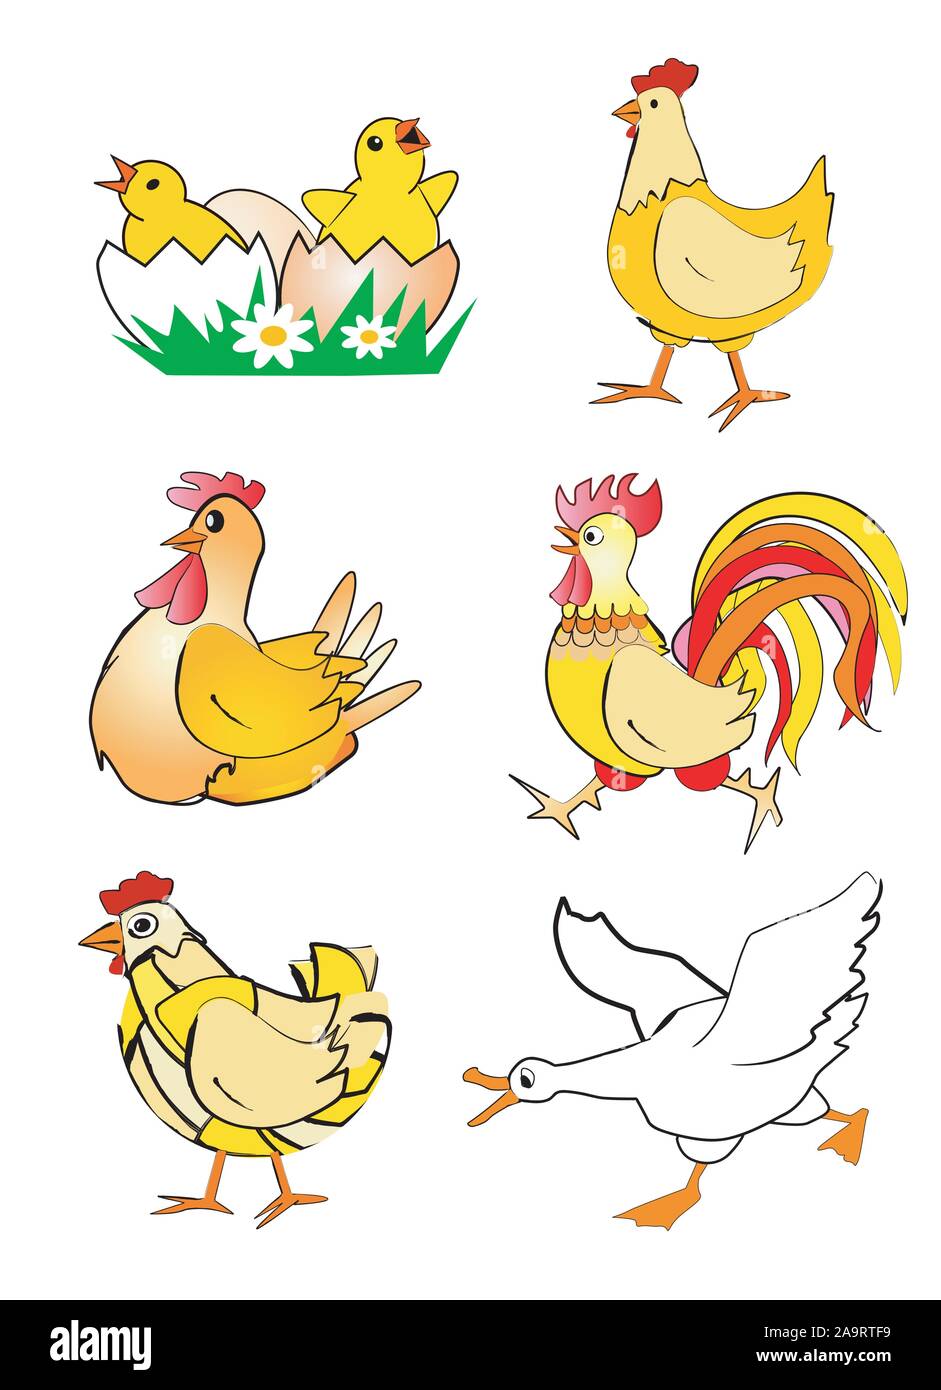 Poulet, poule, coq et poule - cartoon. Des dessins stylisés colorés de Poulet, poule, coq et l'oie. Isolé sur fond blanc. Illustration de Vecteur